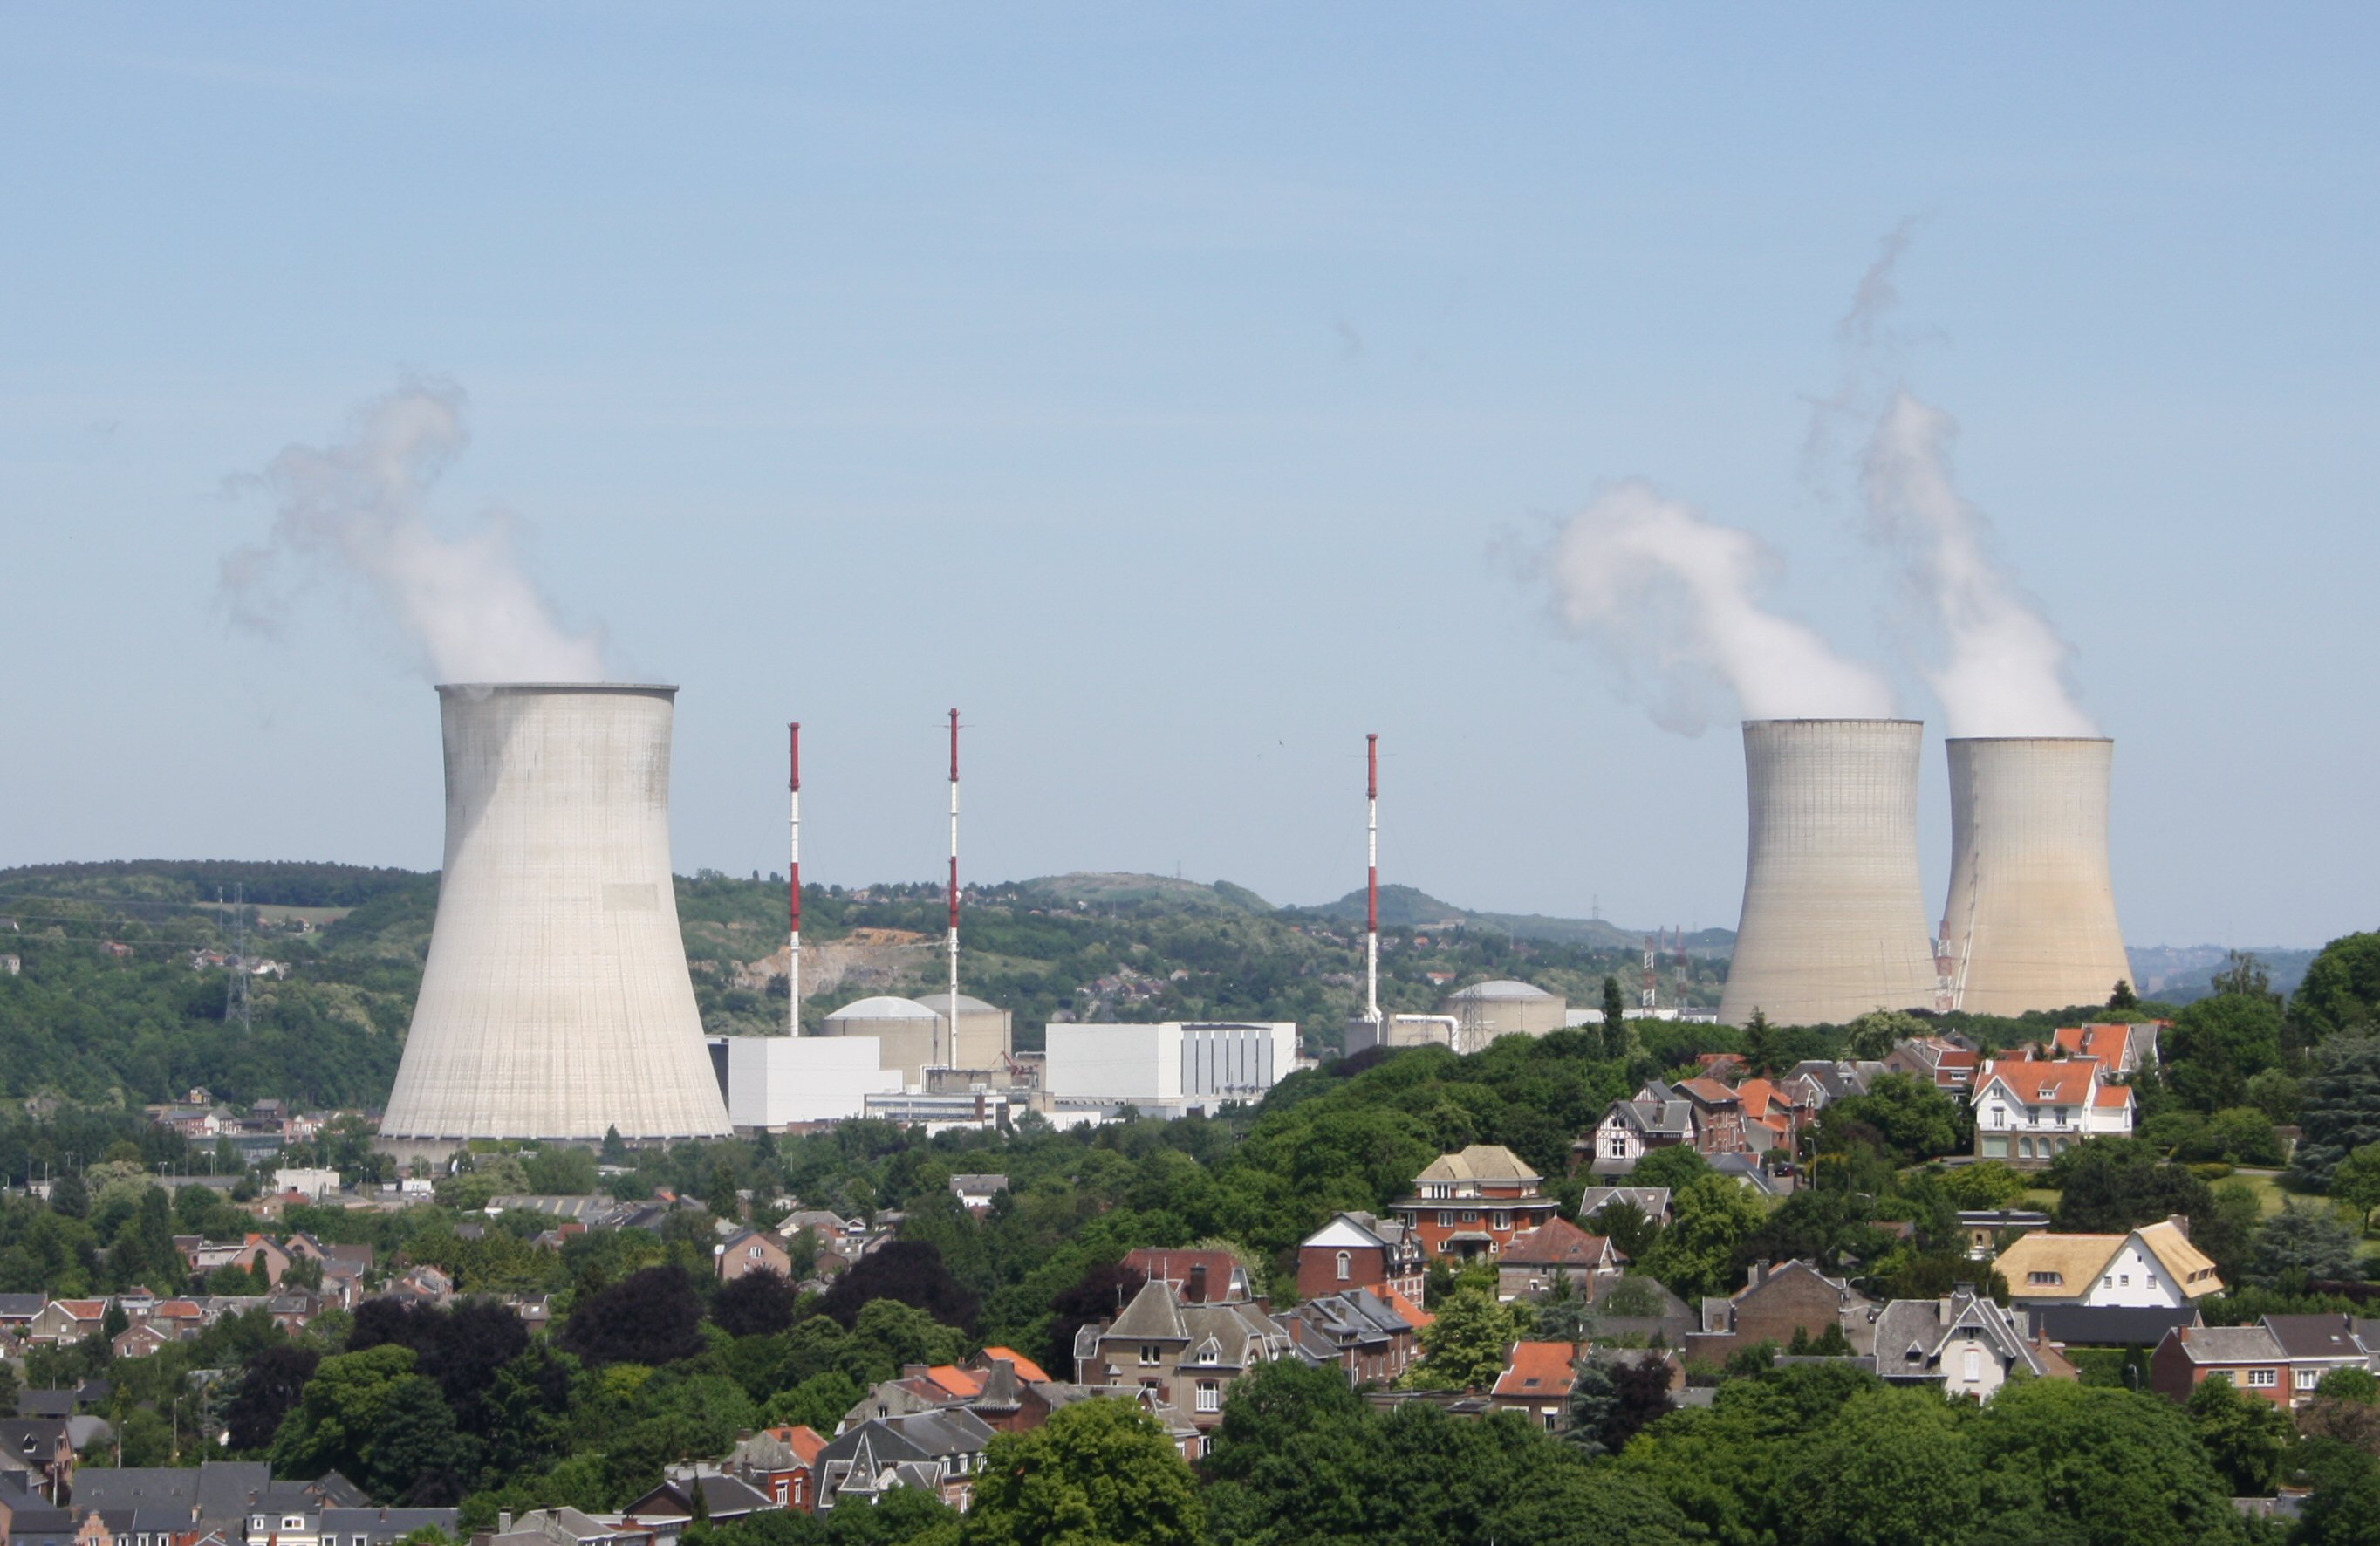 Belgium meghosszabbította két atomerőműve működését 2035-ig